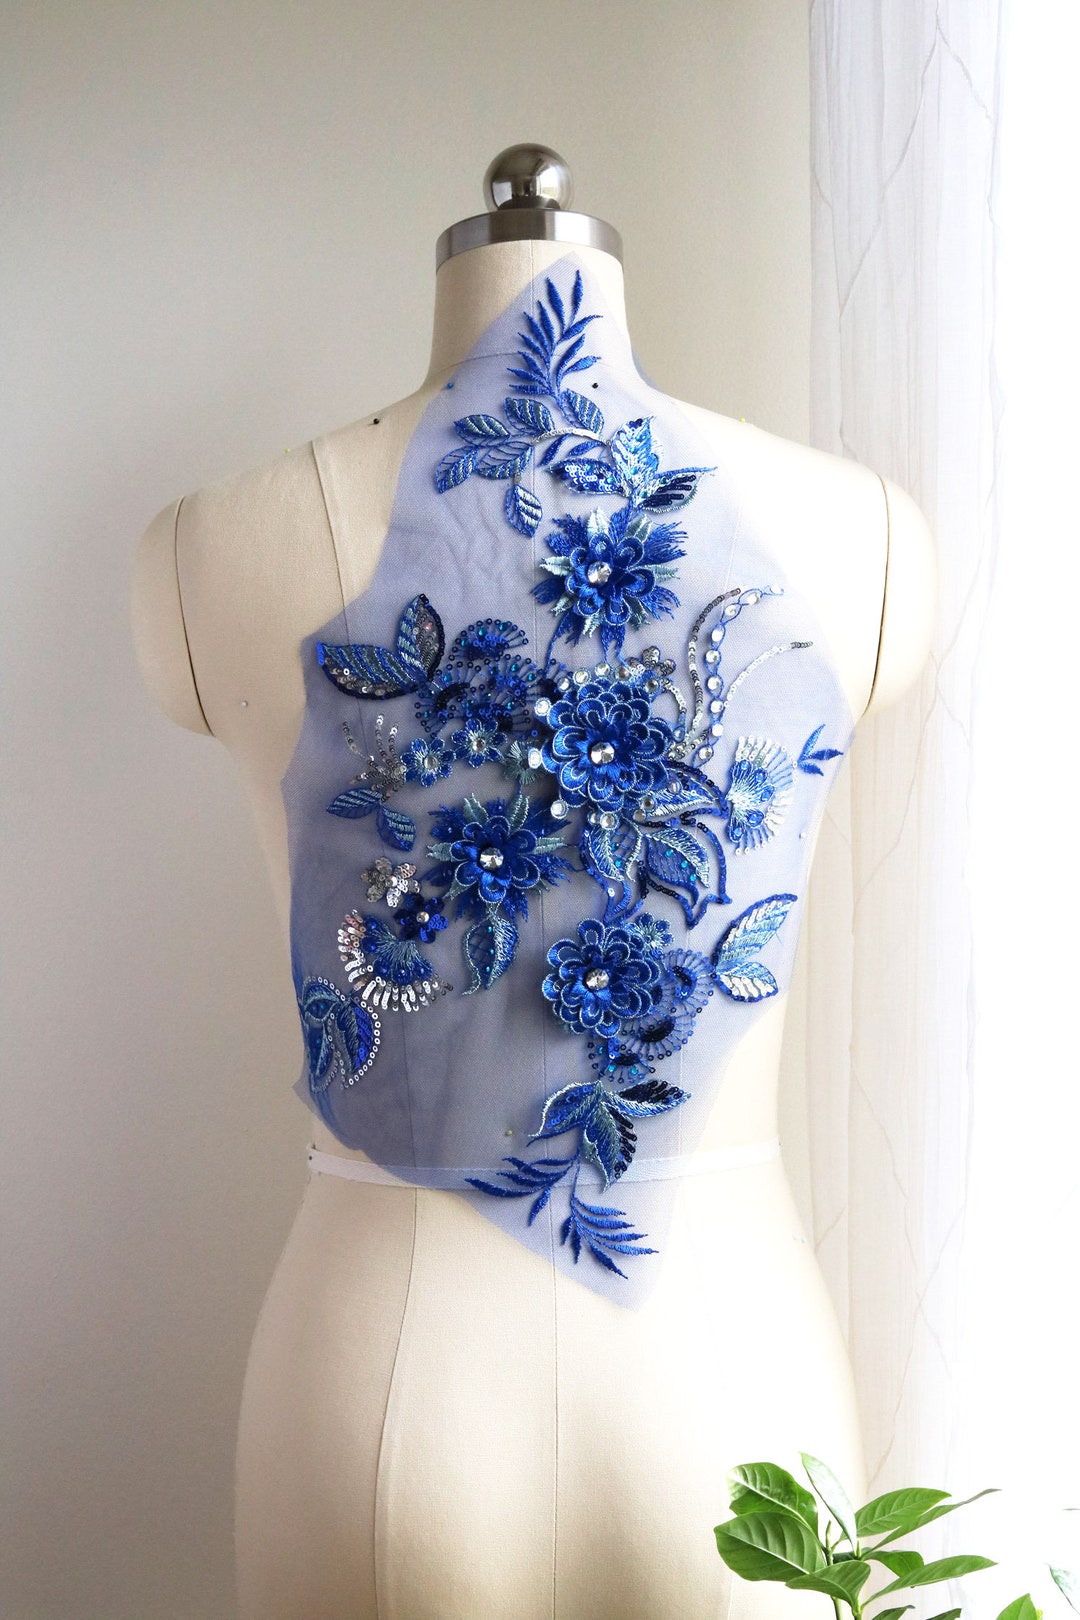 Large Crystal Lace Applique Royal Blue 3D Flower Lace - Etsy